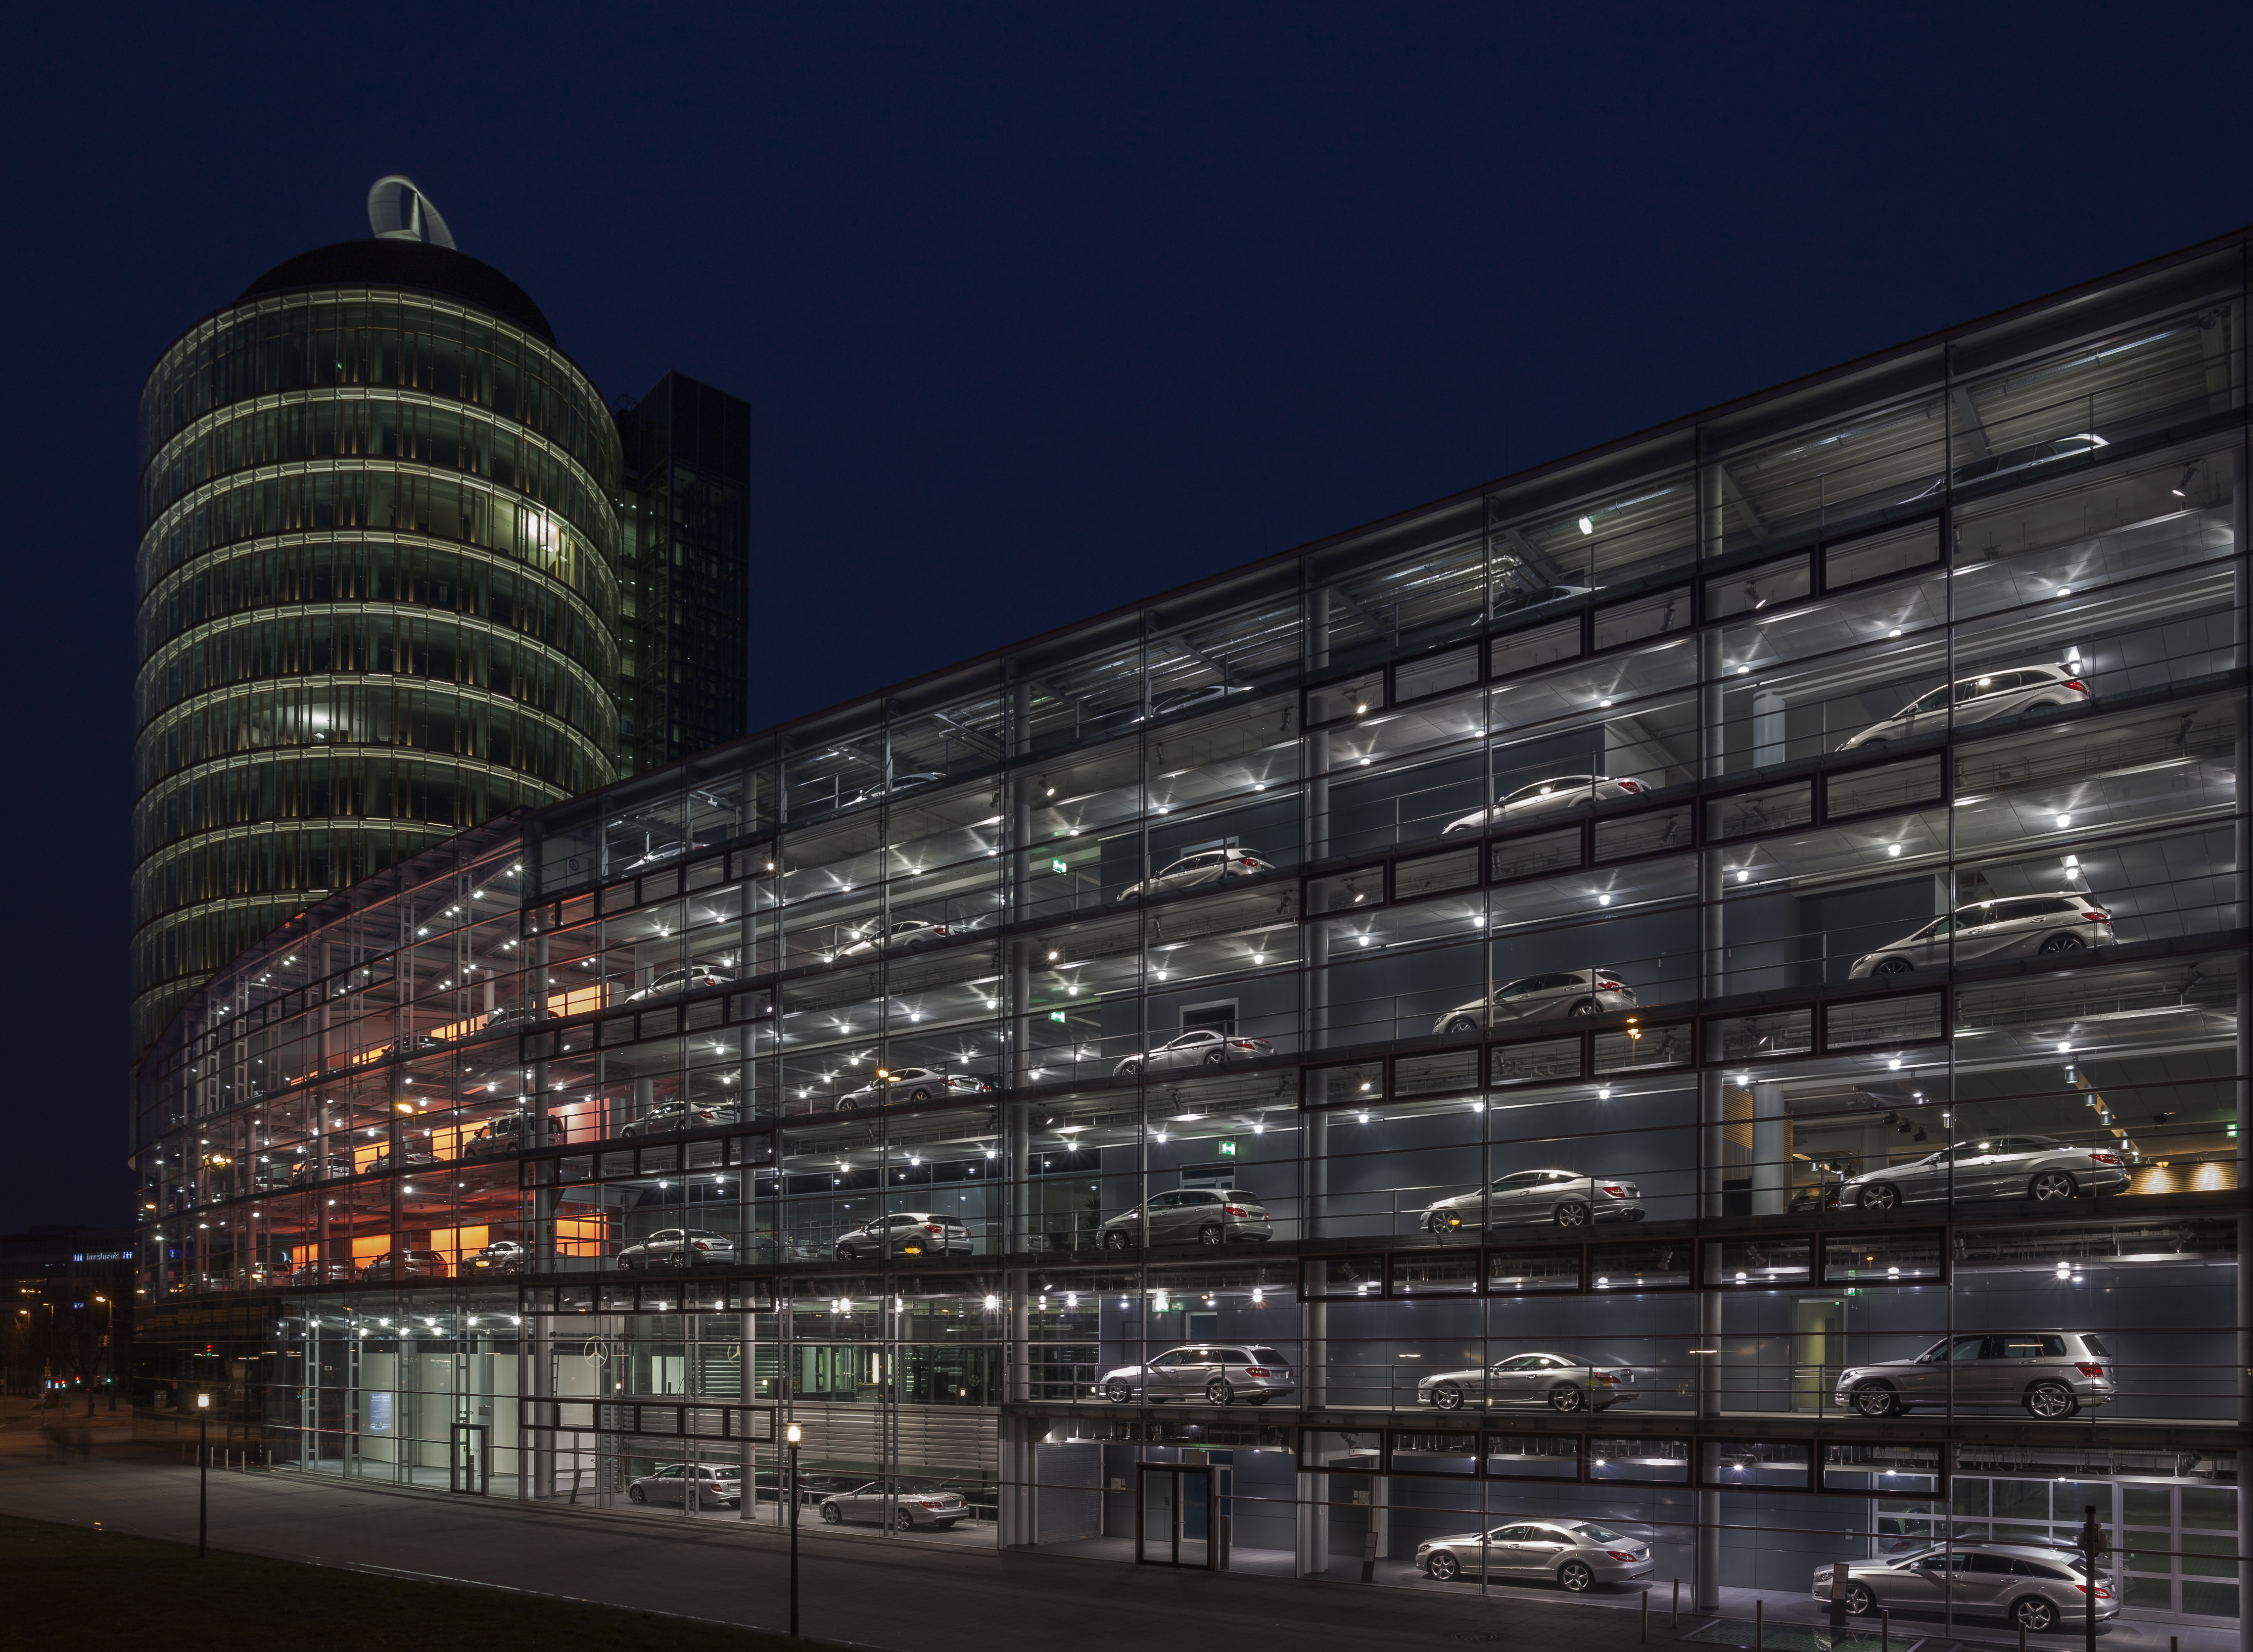 Concesionario de Mercedes-Benz, Múnich, Alemania, 2013-03-30, DD 27